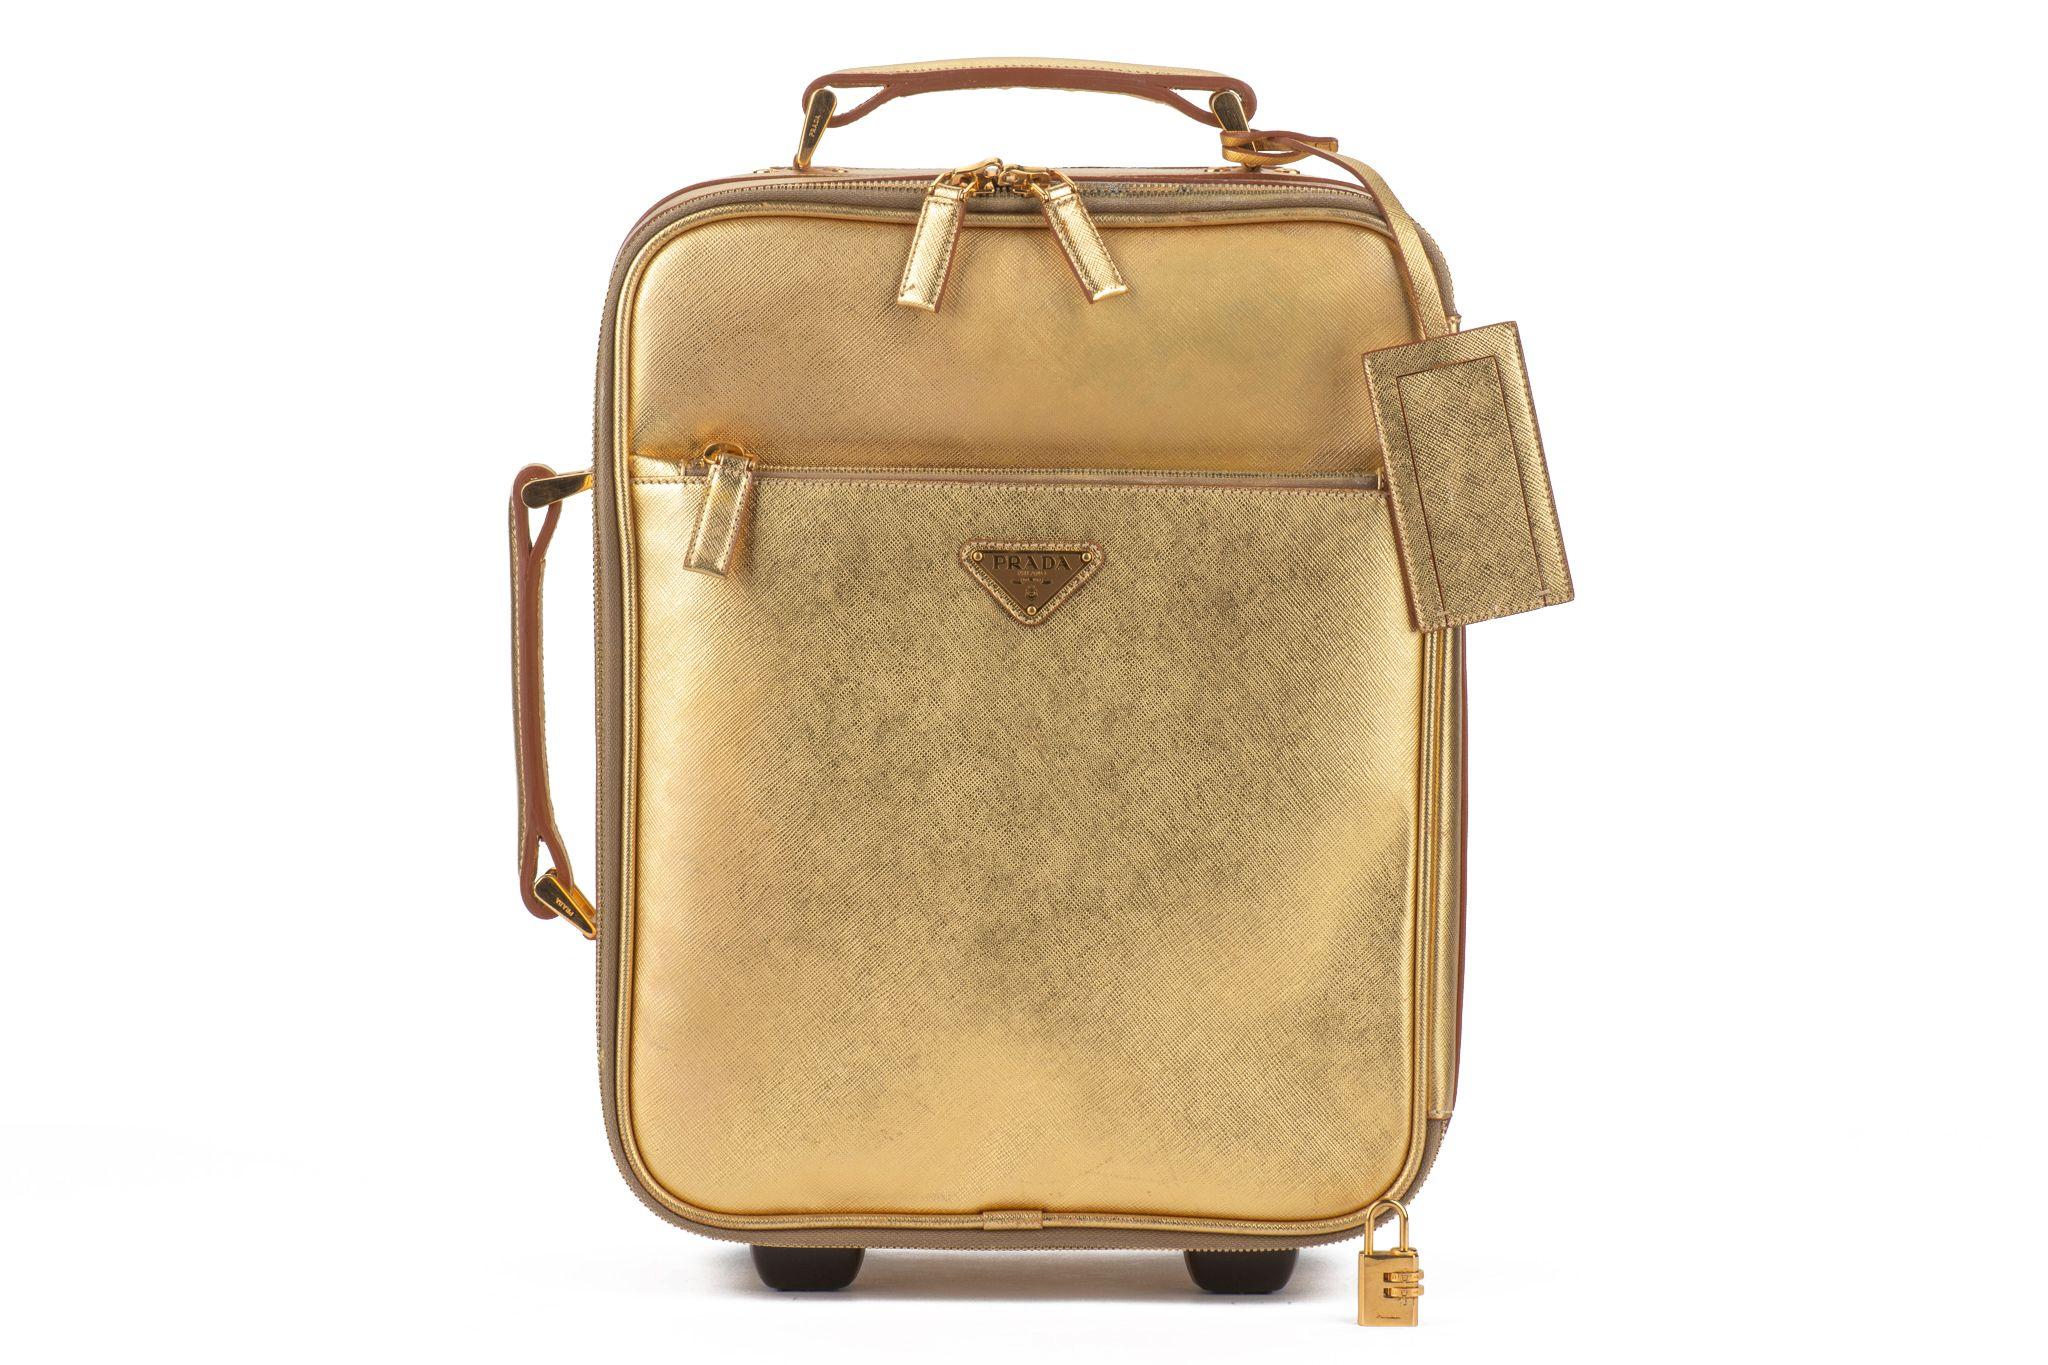 Prada super chic et rare petite valise de transport en cuir saffiano doré. Intérieur impeccable et très légères éraflures à l'intérieur. 
Serrure à combinaison, étiquette pour le nom. Couverture générique. 